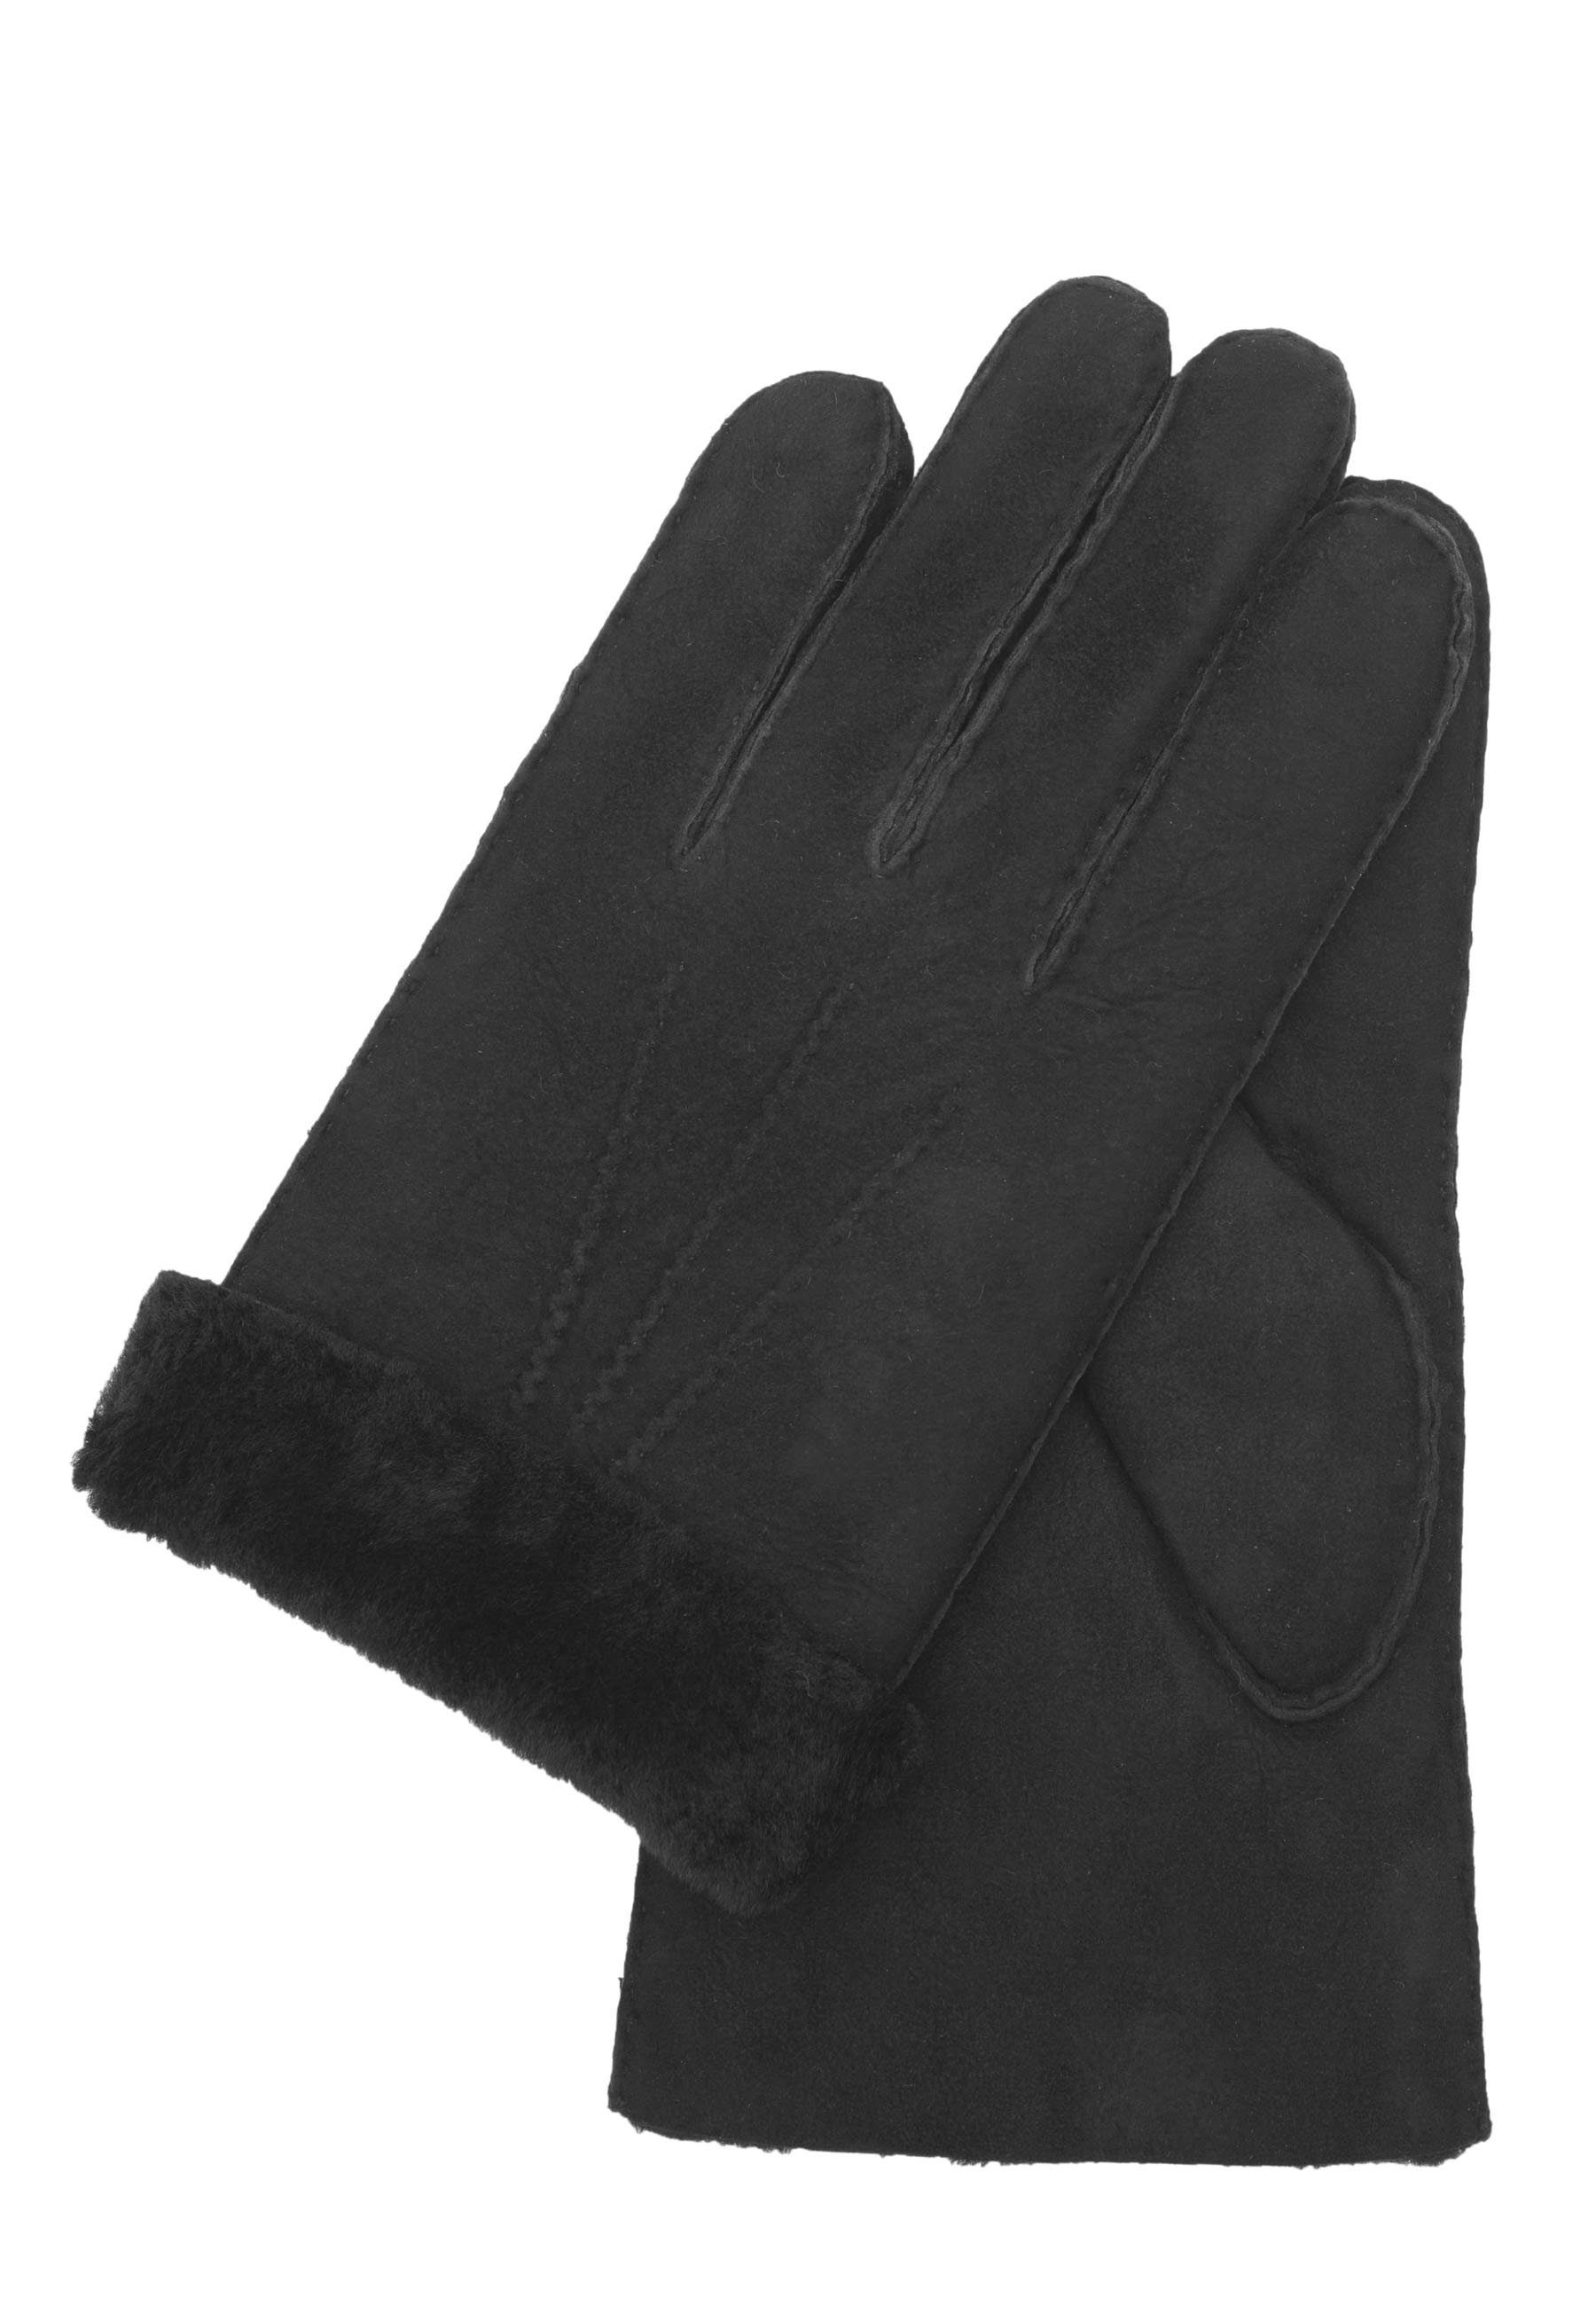 GRETCHEN Lederhandschuhe aus echtem Lammfell schwarz | Handschuhe